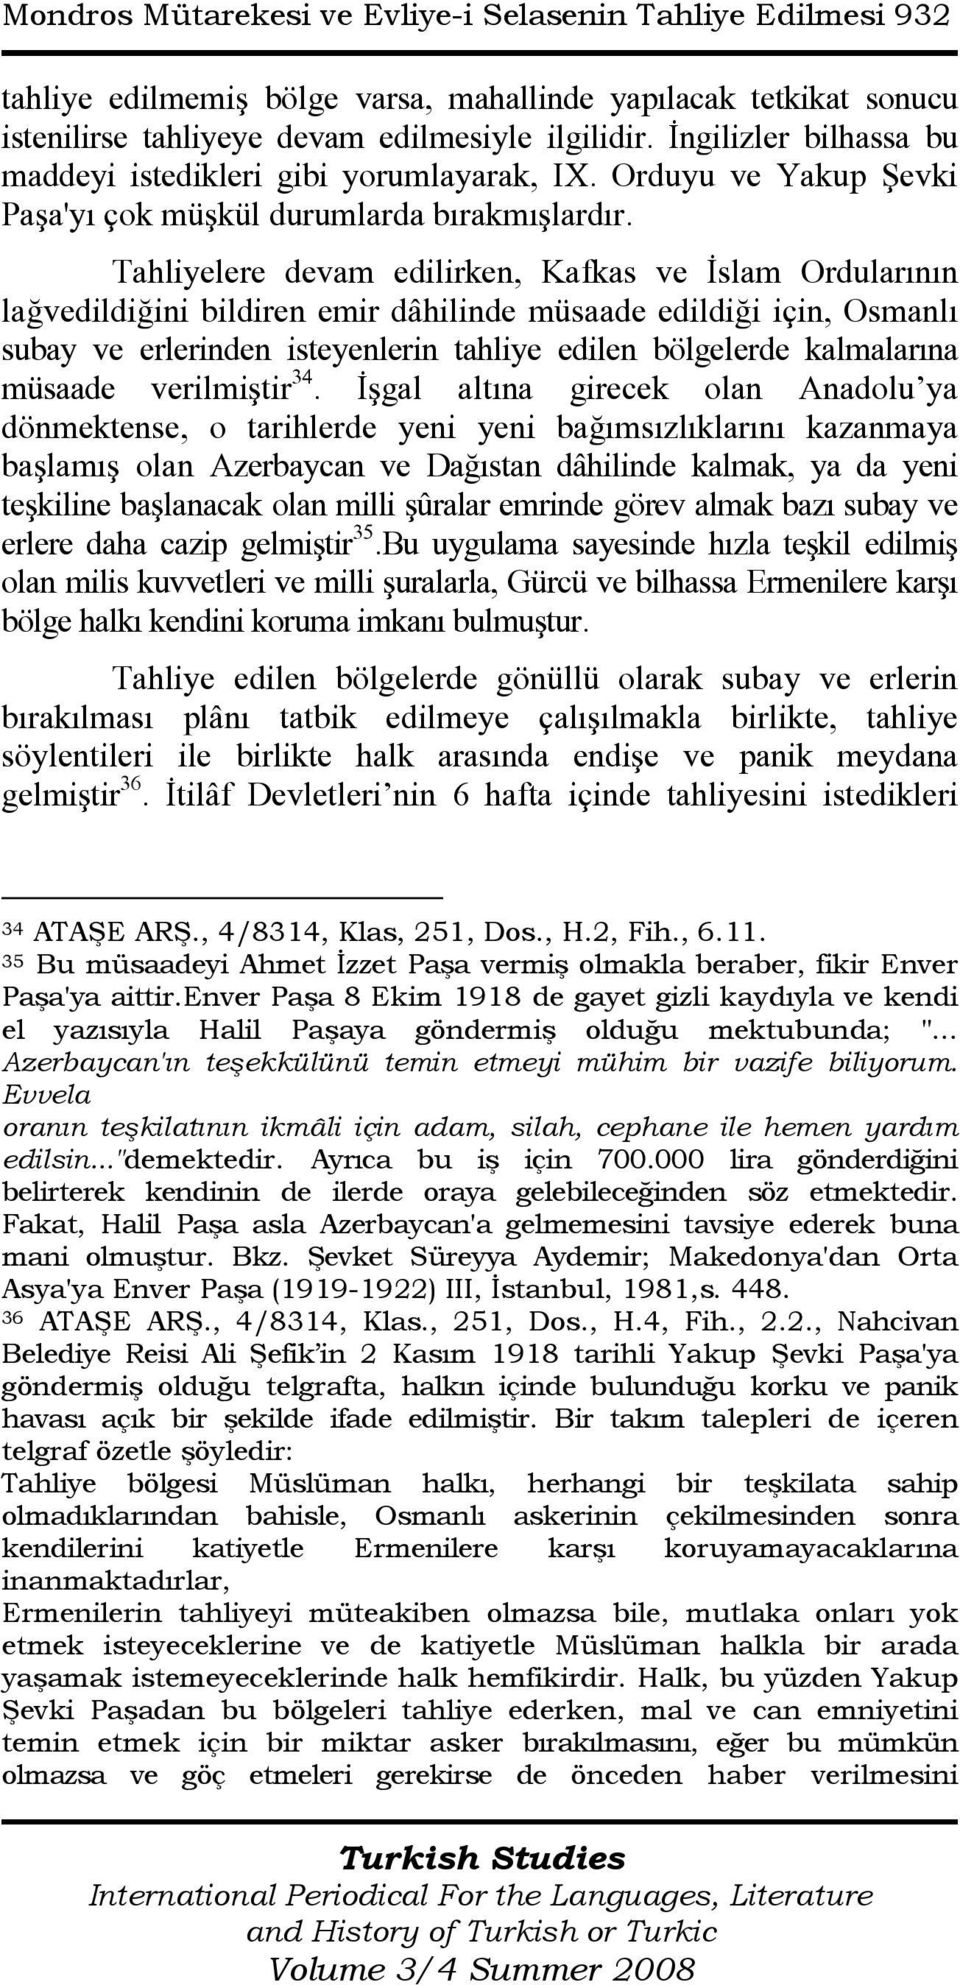 Tahliyelere devam edilirken, Kafkas ve Đslam Ordularının lağvedildiğini bildiren emir dâhilinde müsaade edildiği için, Osmanlı subay ve erlerinden isteyenlerin tahliye edilen bölgelerde kalmalarına